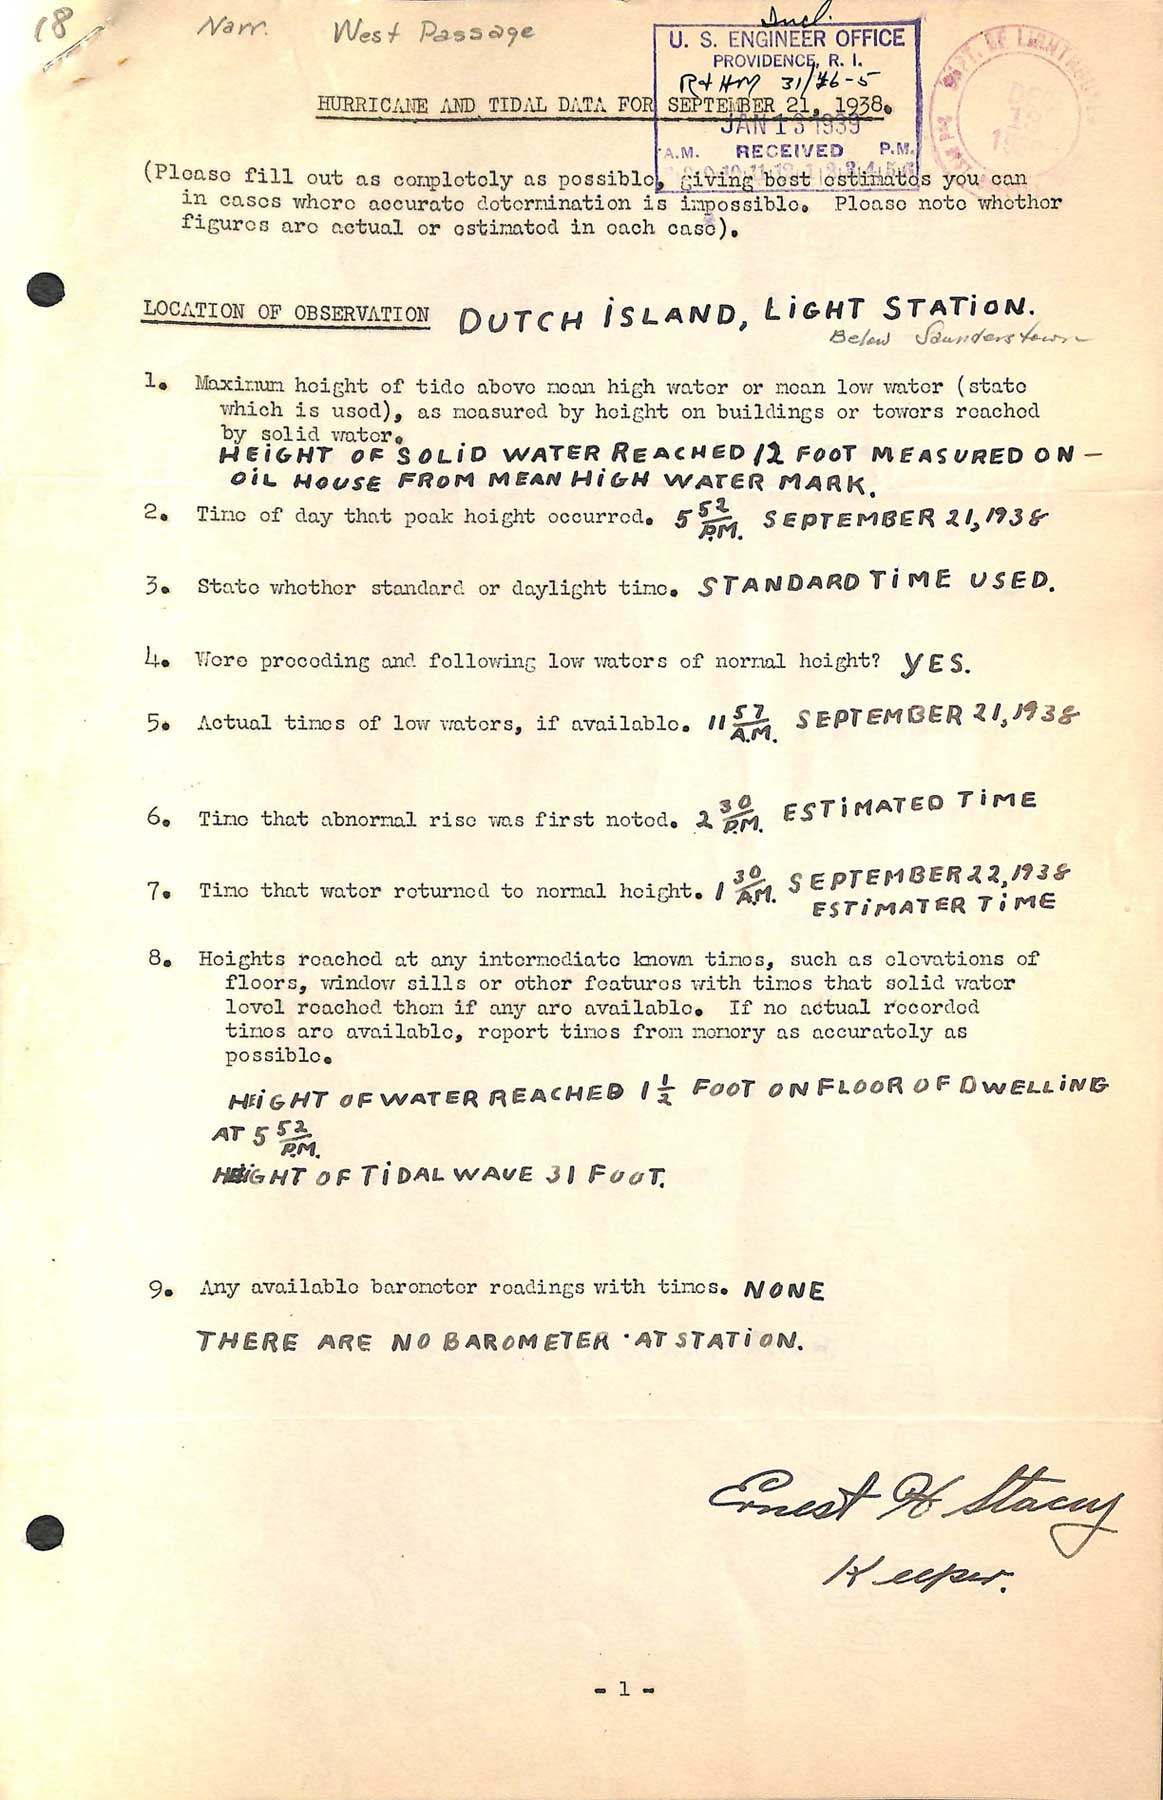 Dutch Island Light - A questionnaire regarding the hurricane of September 21, 1938